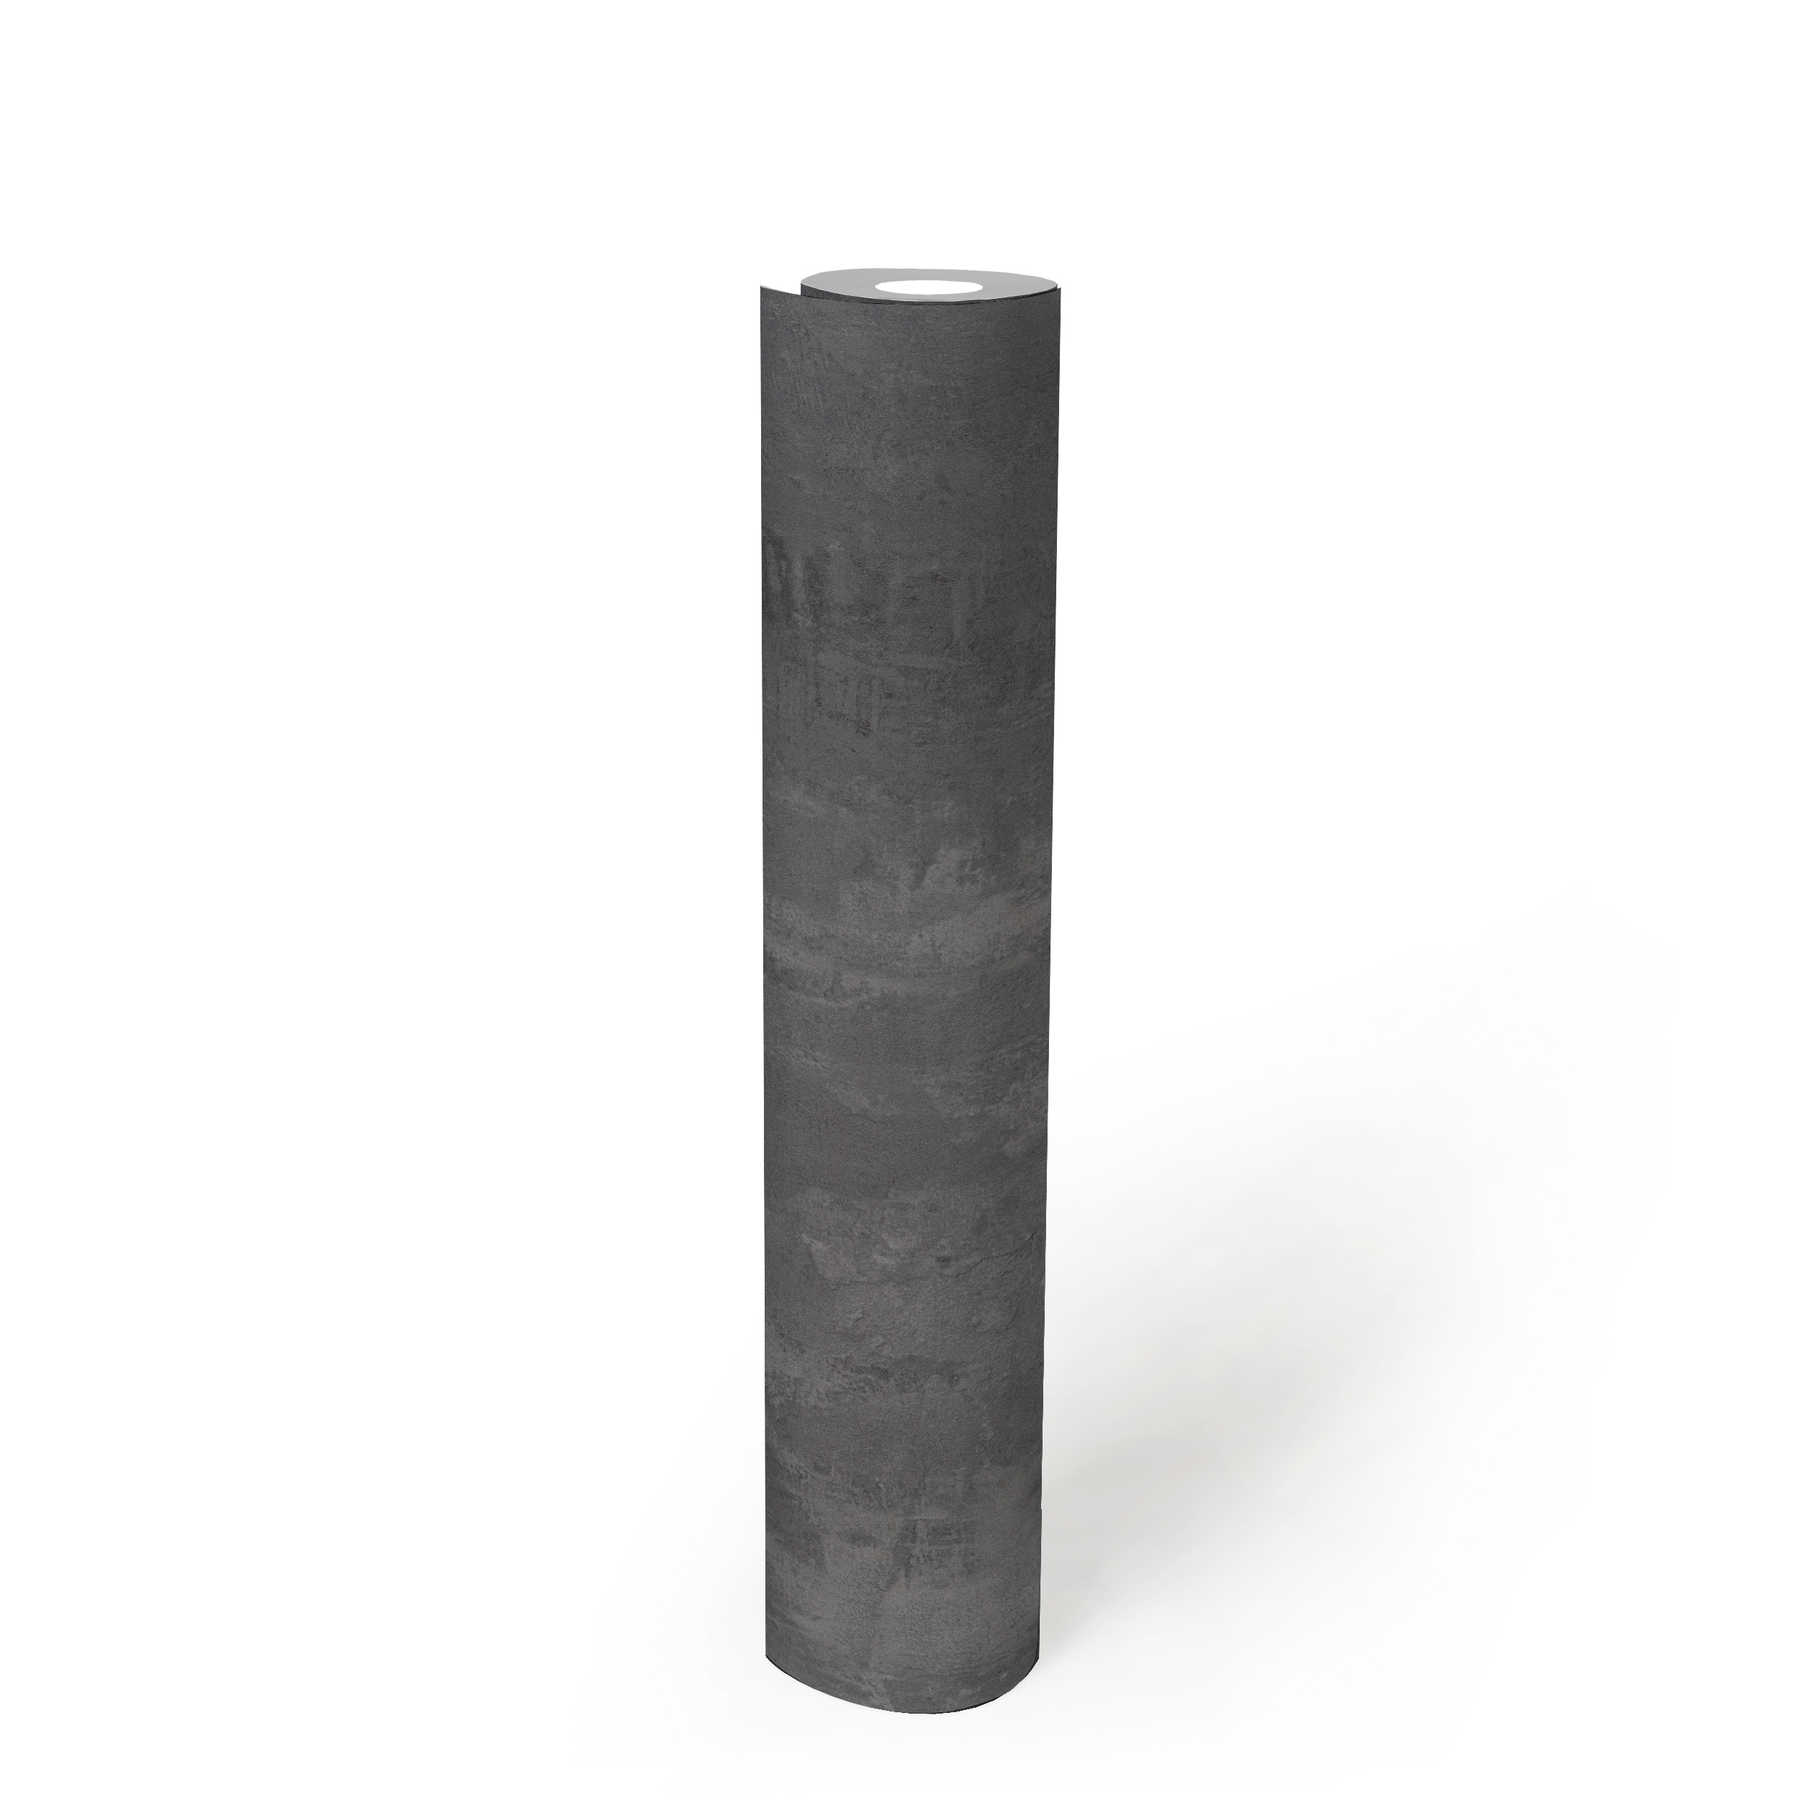             Dunkle Betontapete rustikales Muster & Industrial Style – Grau
        